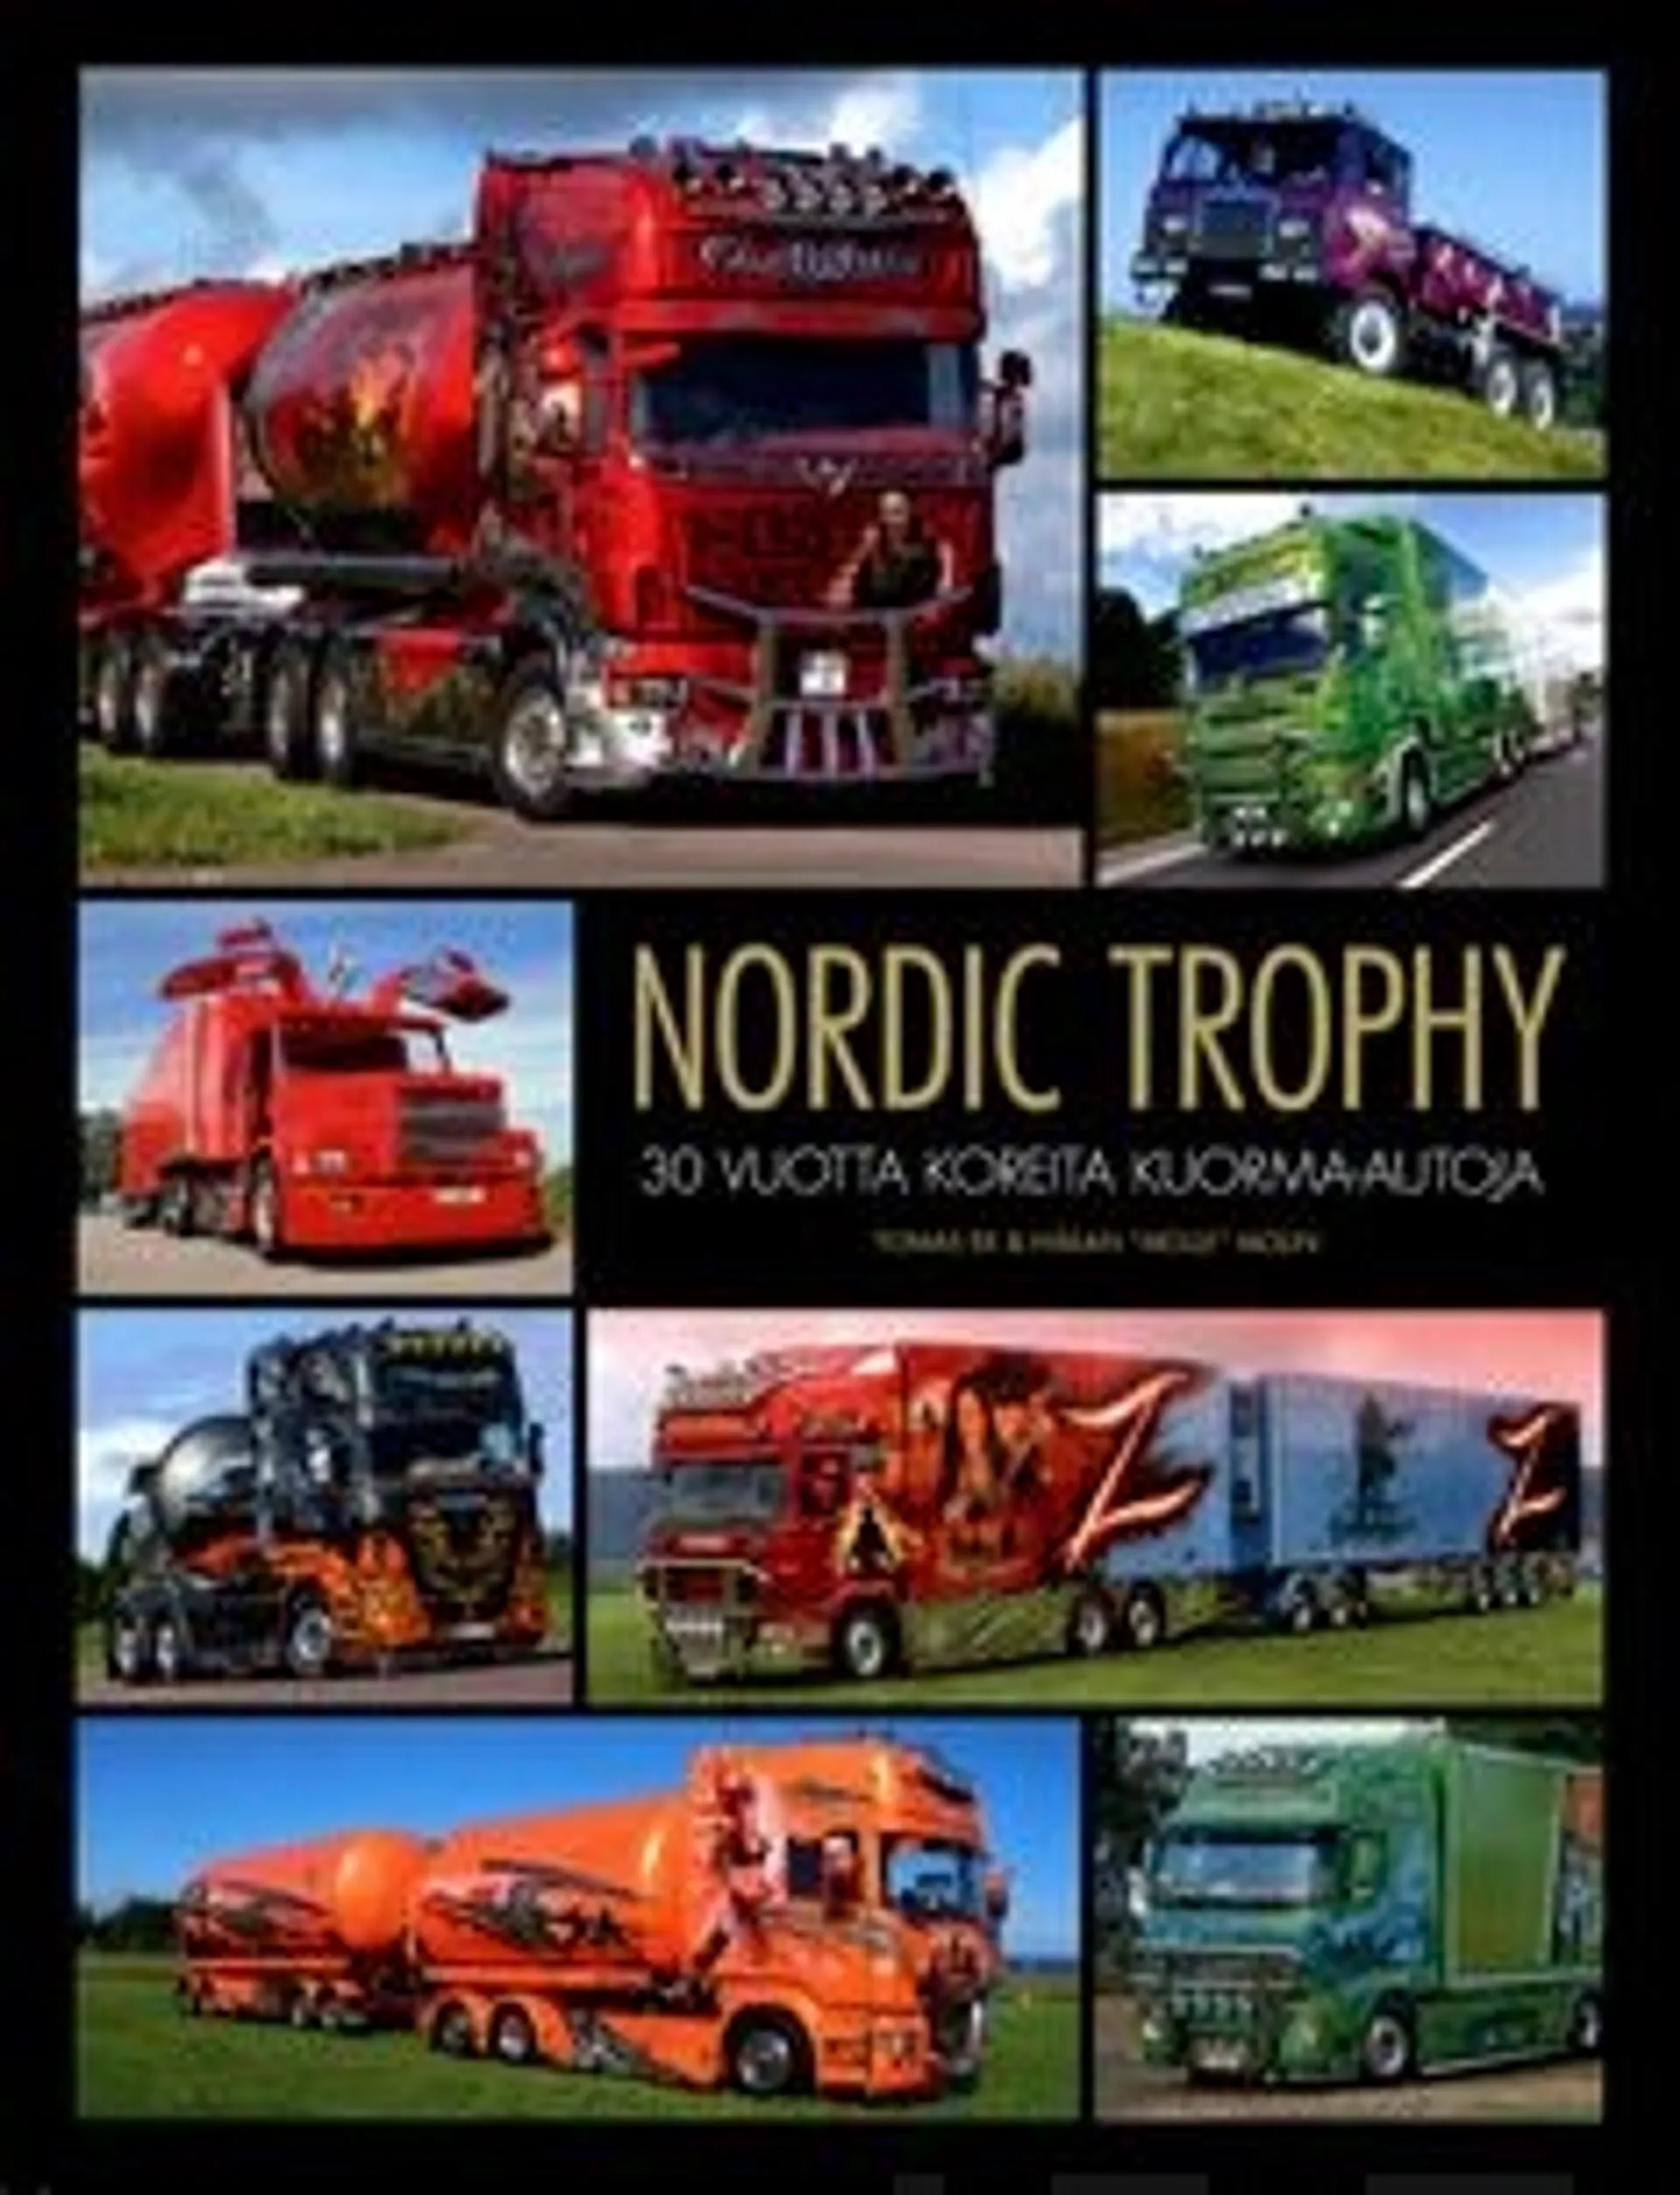 Ek, Nordic Trophy